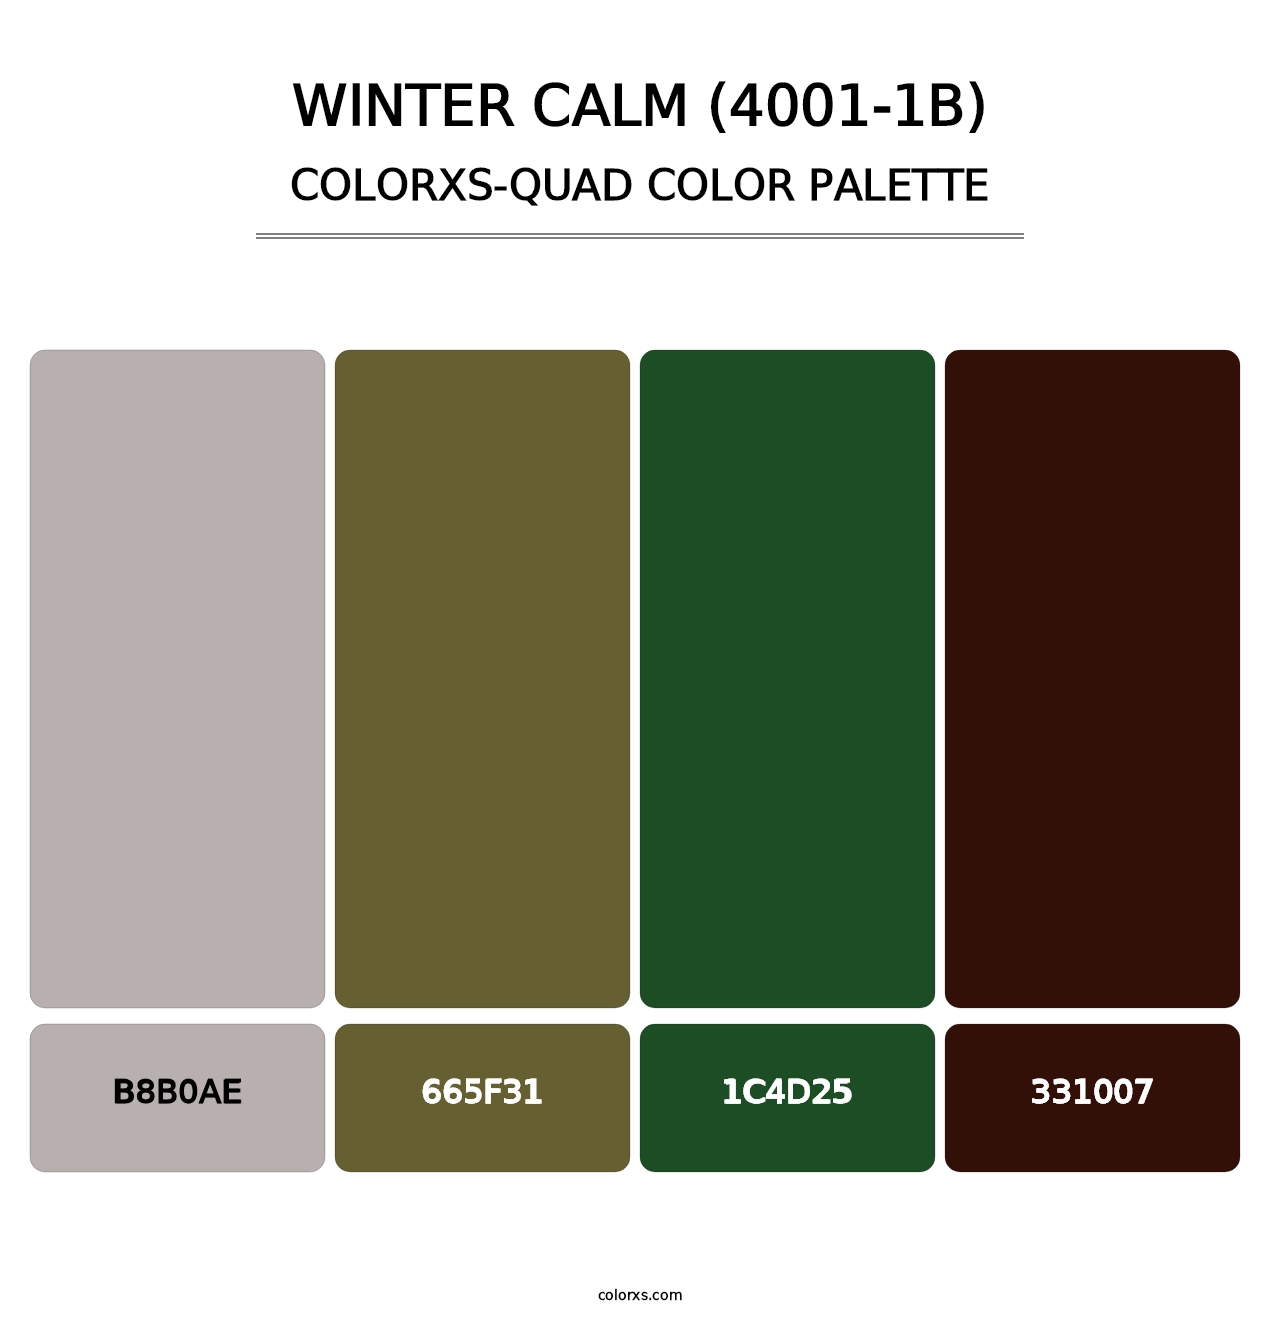 Winter Calm (4001-1B) - Colorxs Quad Palette